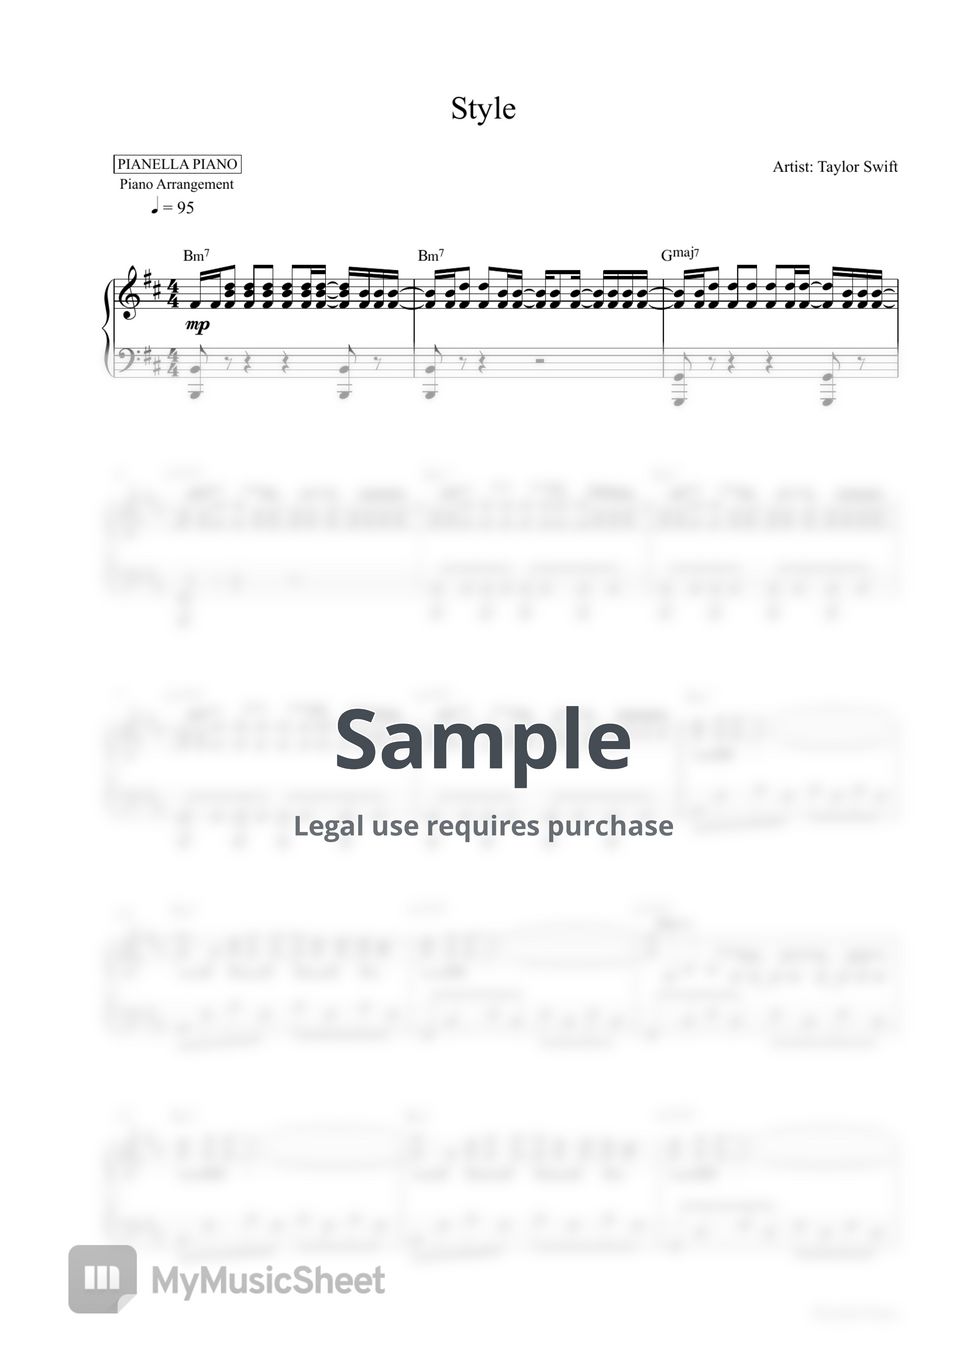 Taylor Swift - Style (Piano Sheet) by Pianella Piano